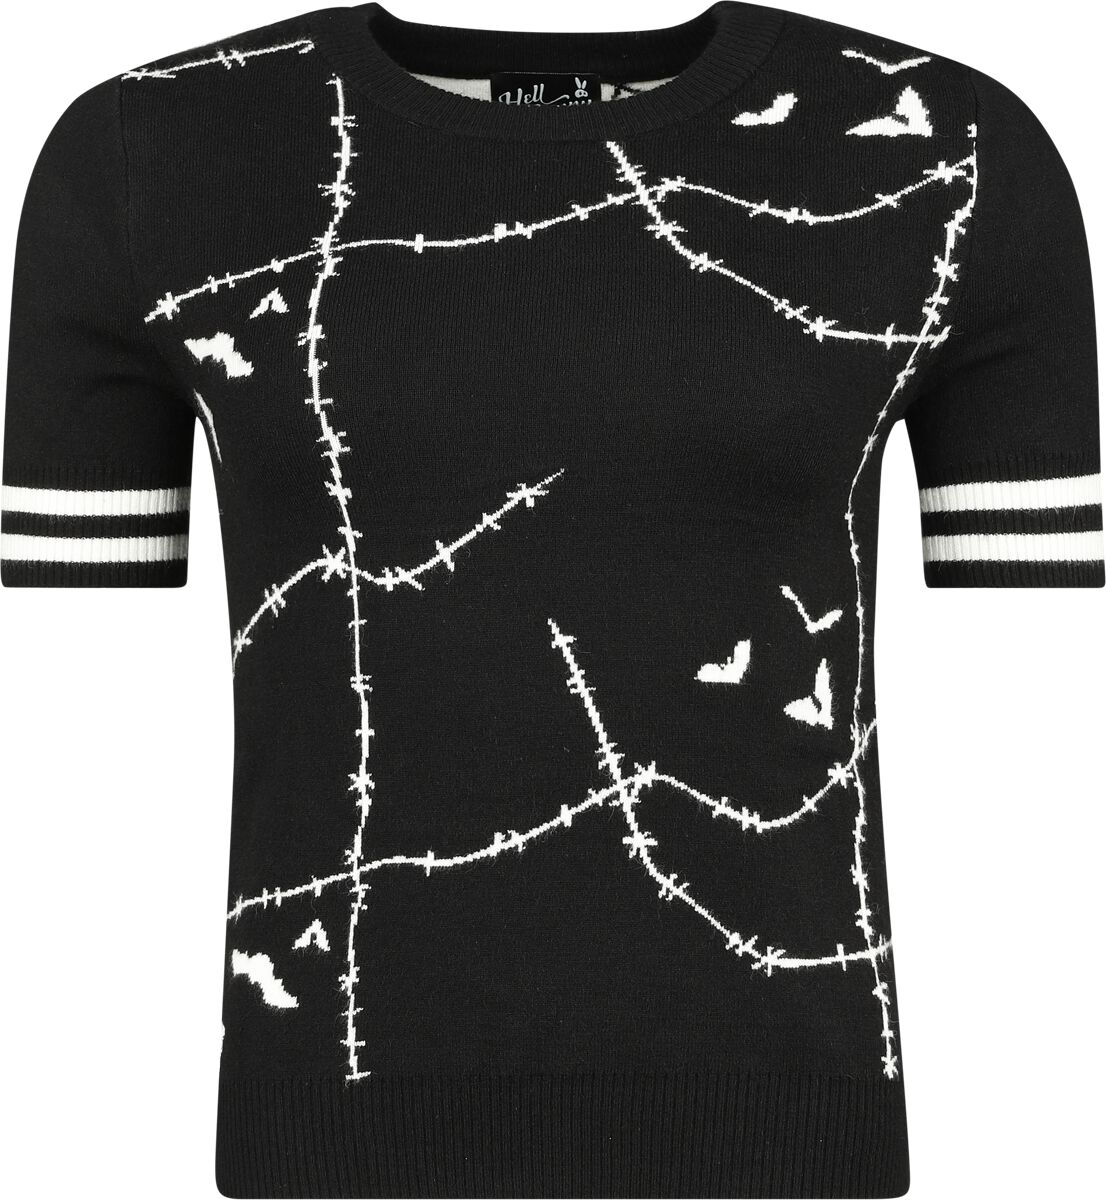 Hell Bunny Stitches Top T-Shirt schwarz weiß in S